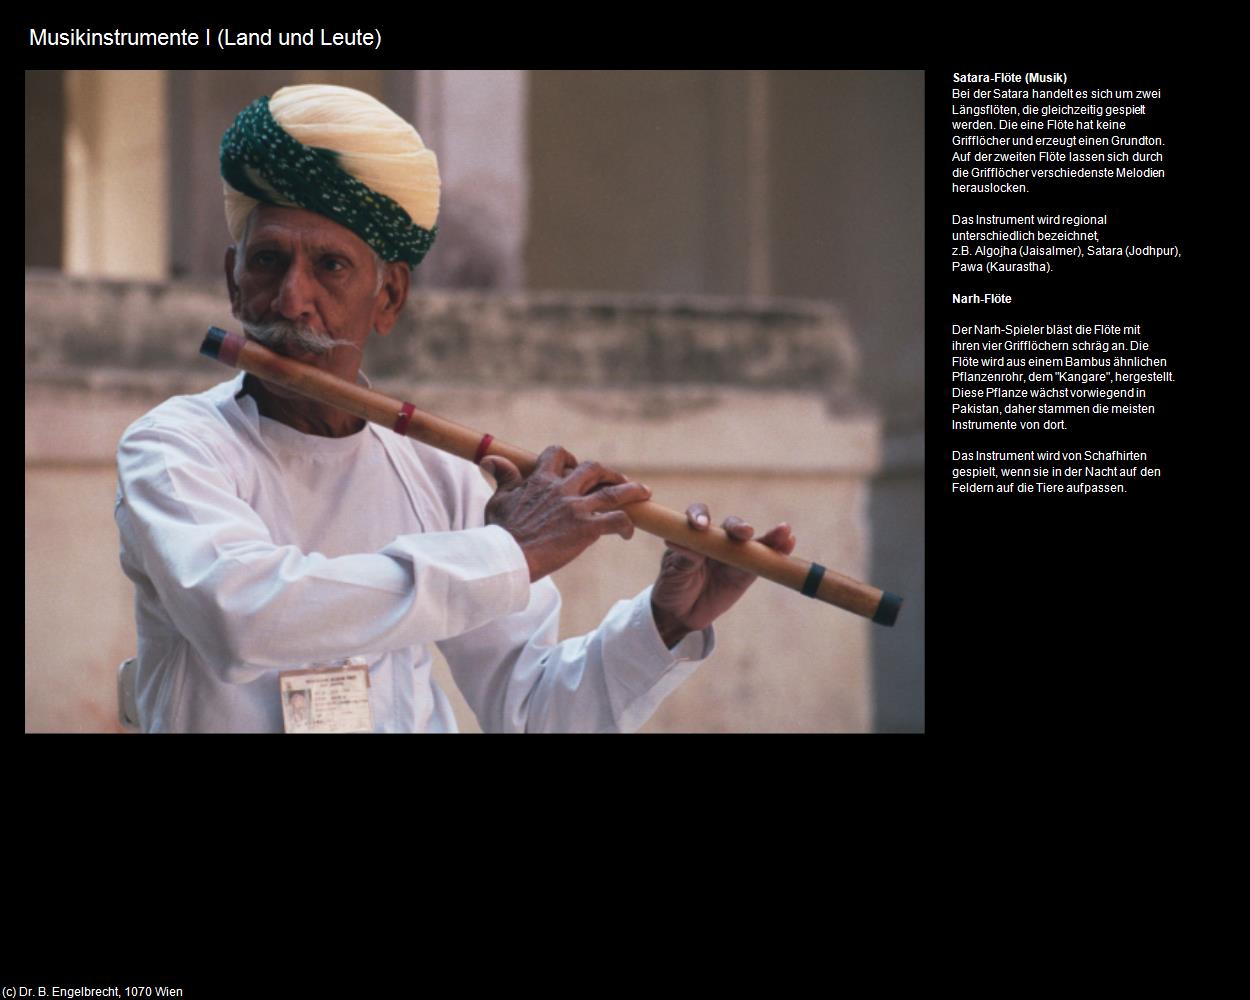 Musikinstrumente I (Rajasthan-Musik) in Rajasthan - das Land der Könige